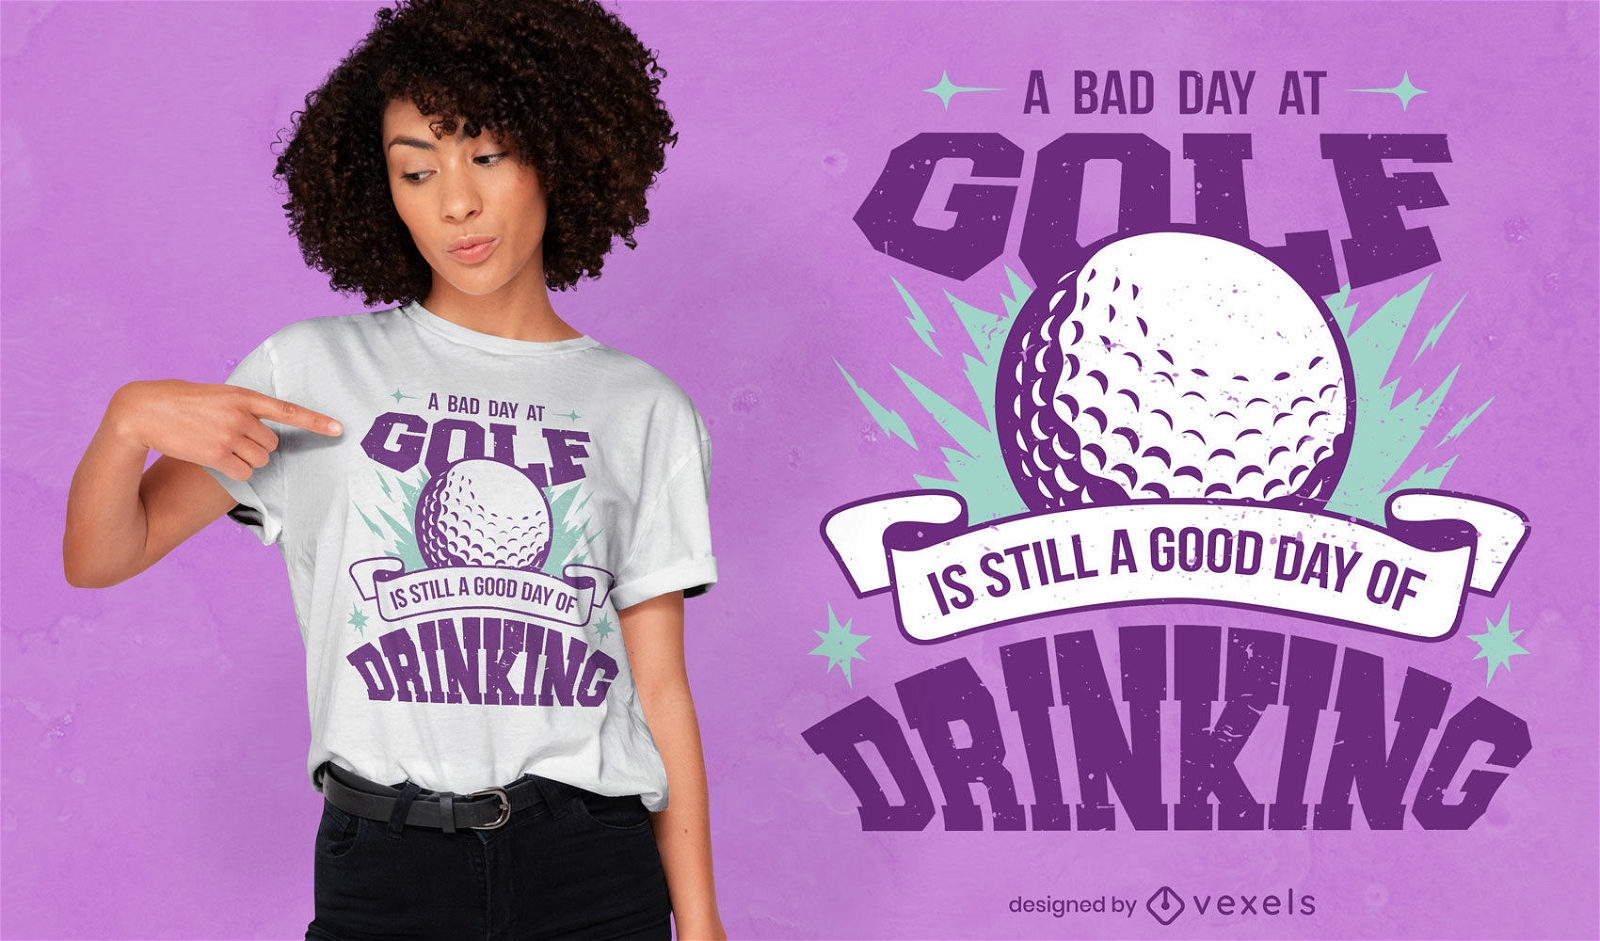 Un mal día en el golf bebiendo diseño de camiseta.